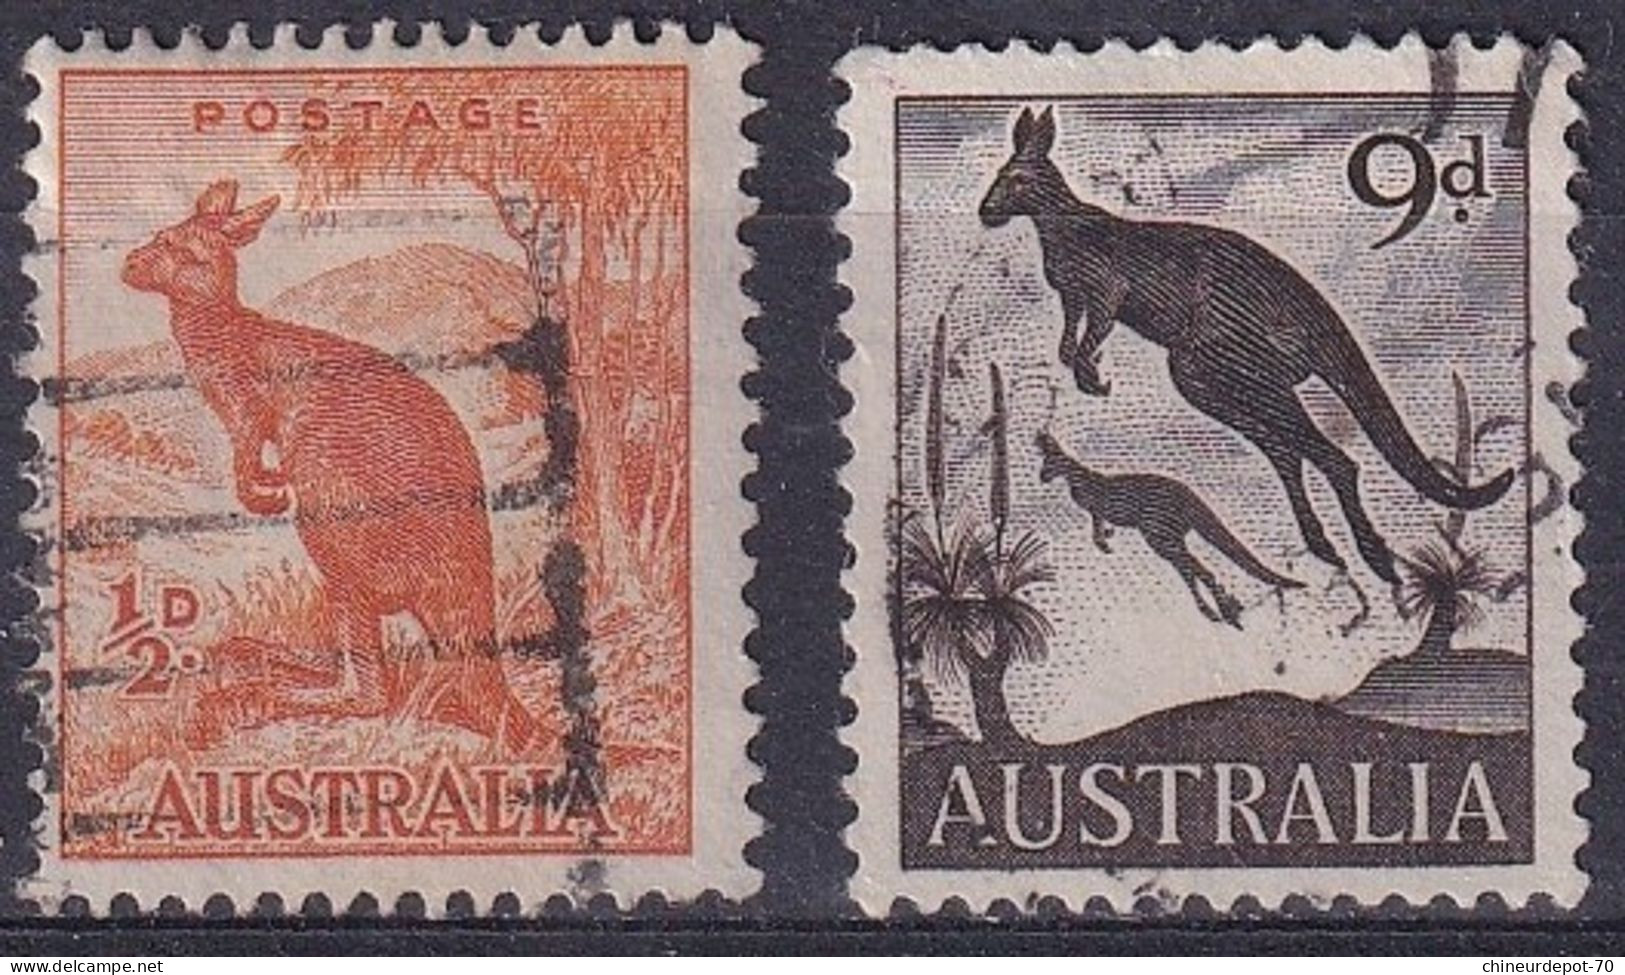 Kangaroo - Used Stamps